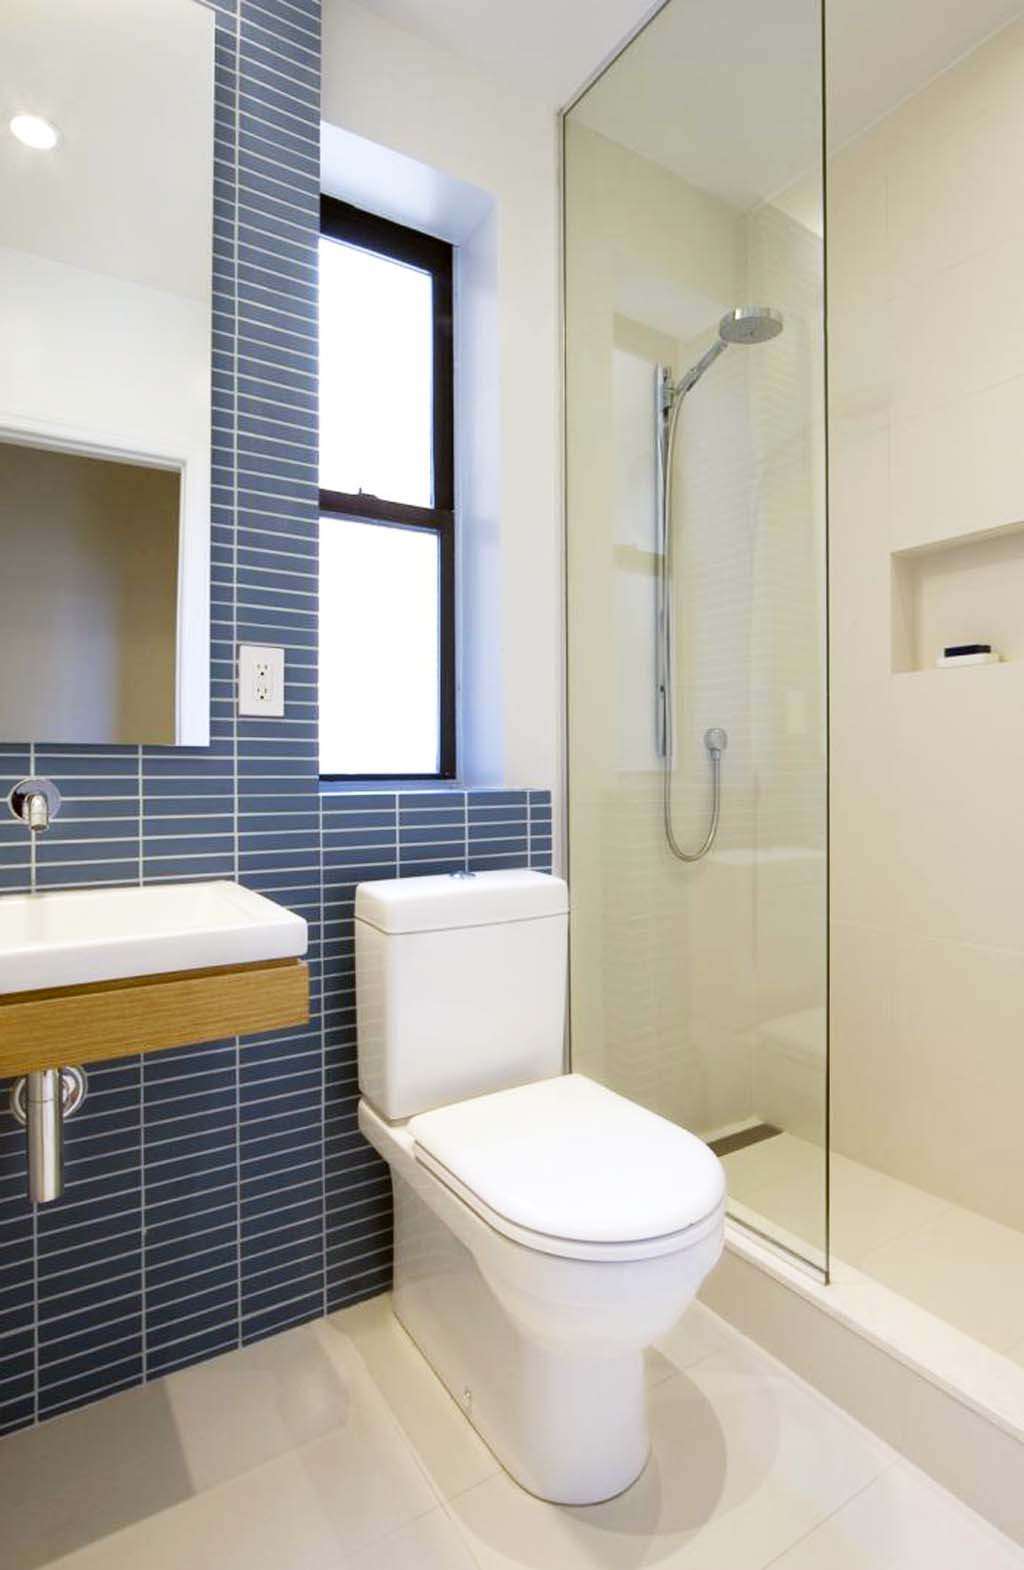 desain kamar mandi minimalis 2018 terbaru dan terbaik ...